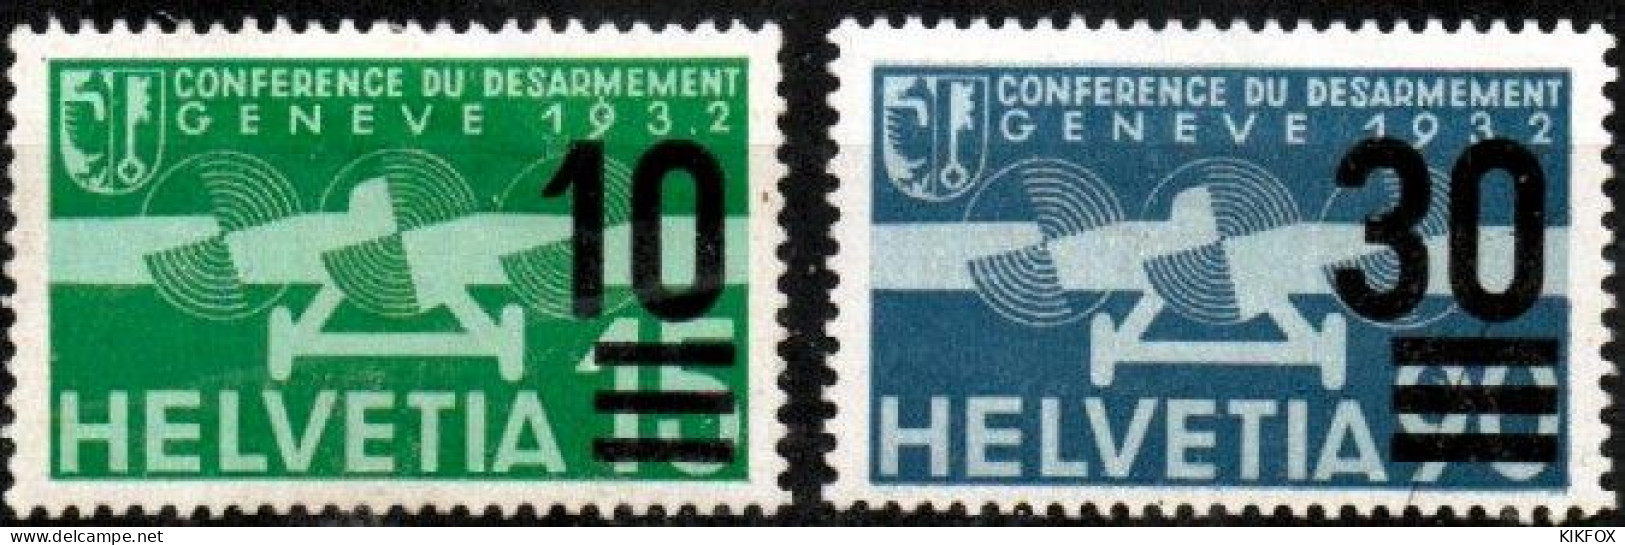 SUISSE ,SCHWEIZ,1932 - 1936  MI 286 + MI 292,  FLUGPOSTAUSGABE MIT ÜBERDRUCK, UNGEBRAUCHT FALZ, CHARNIERE - Unused Stamps